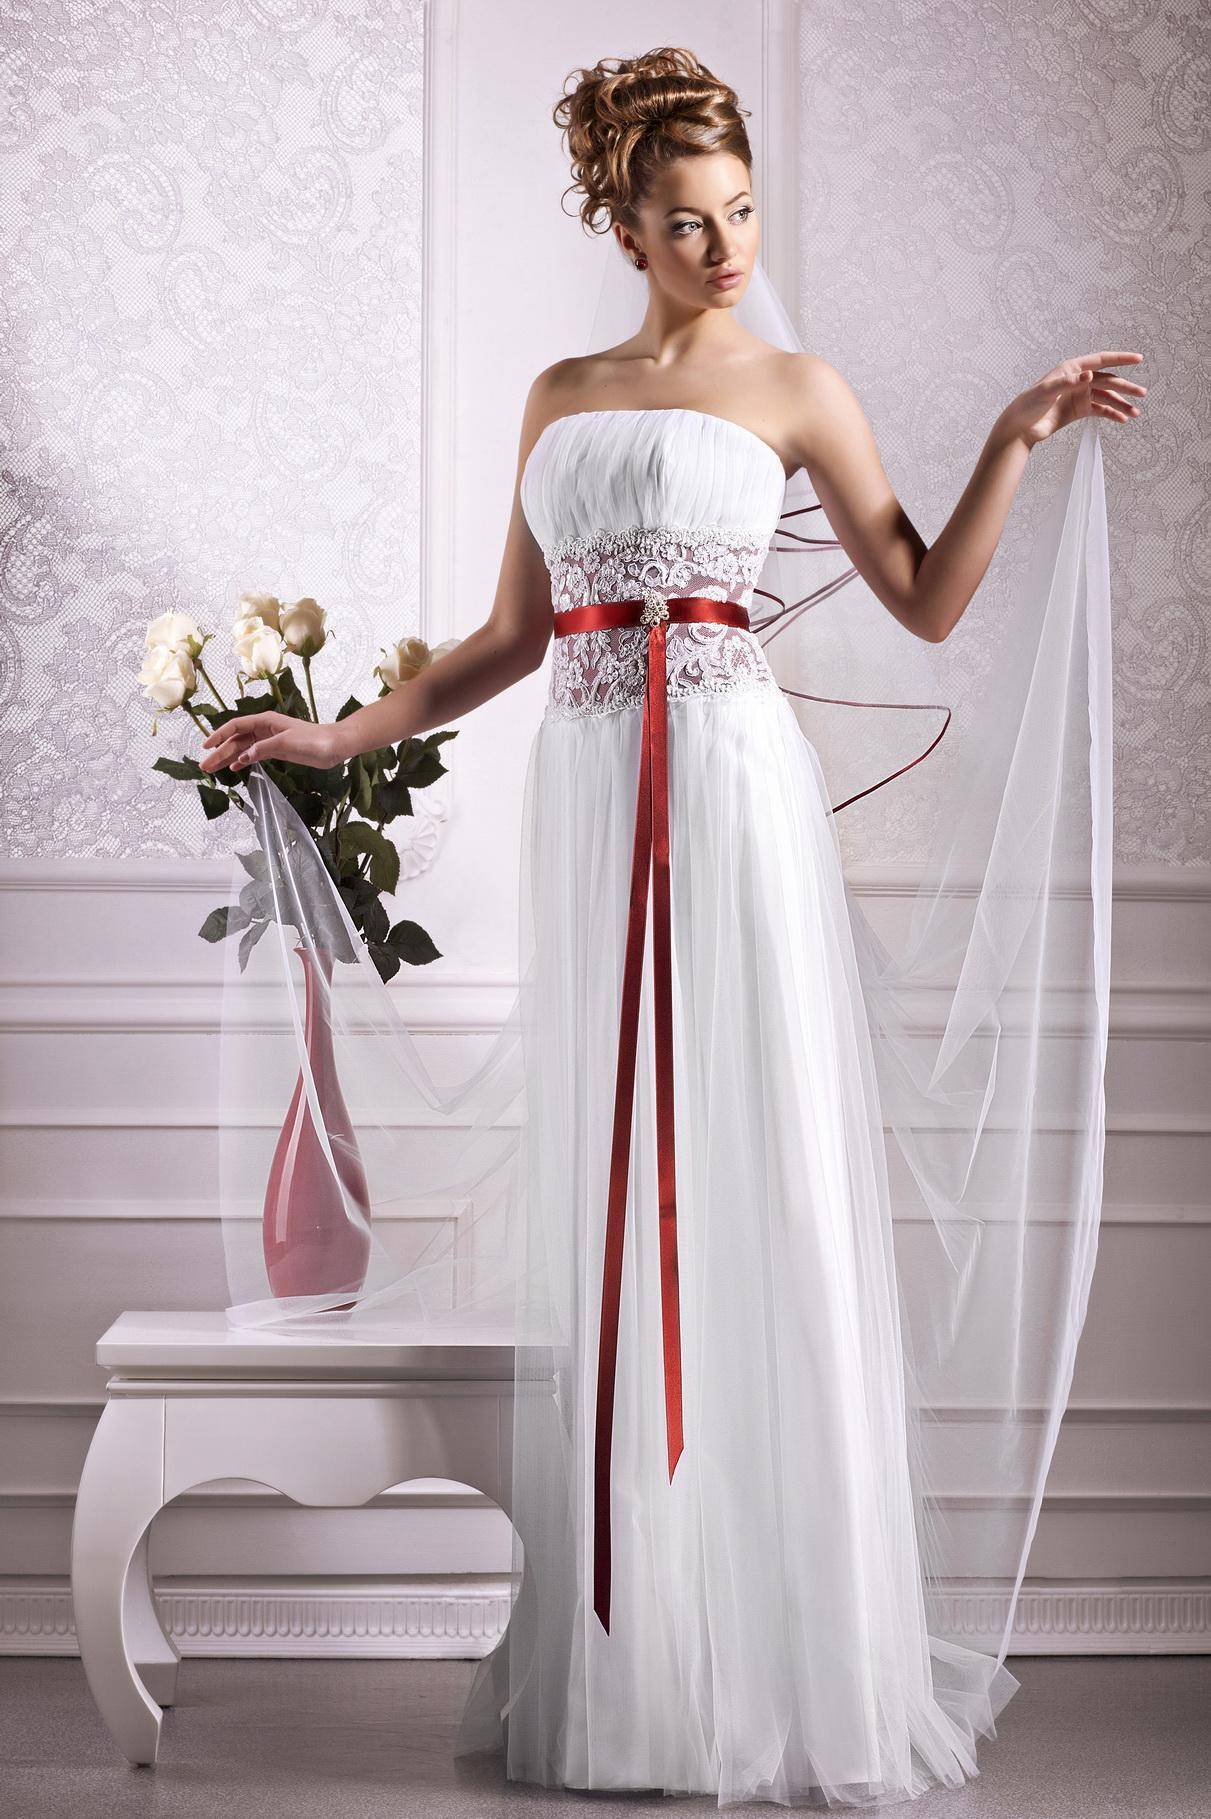 Красивое белое платье с красным